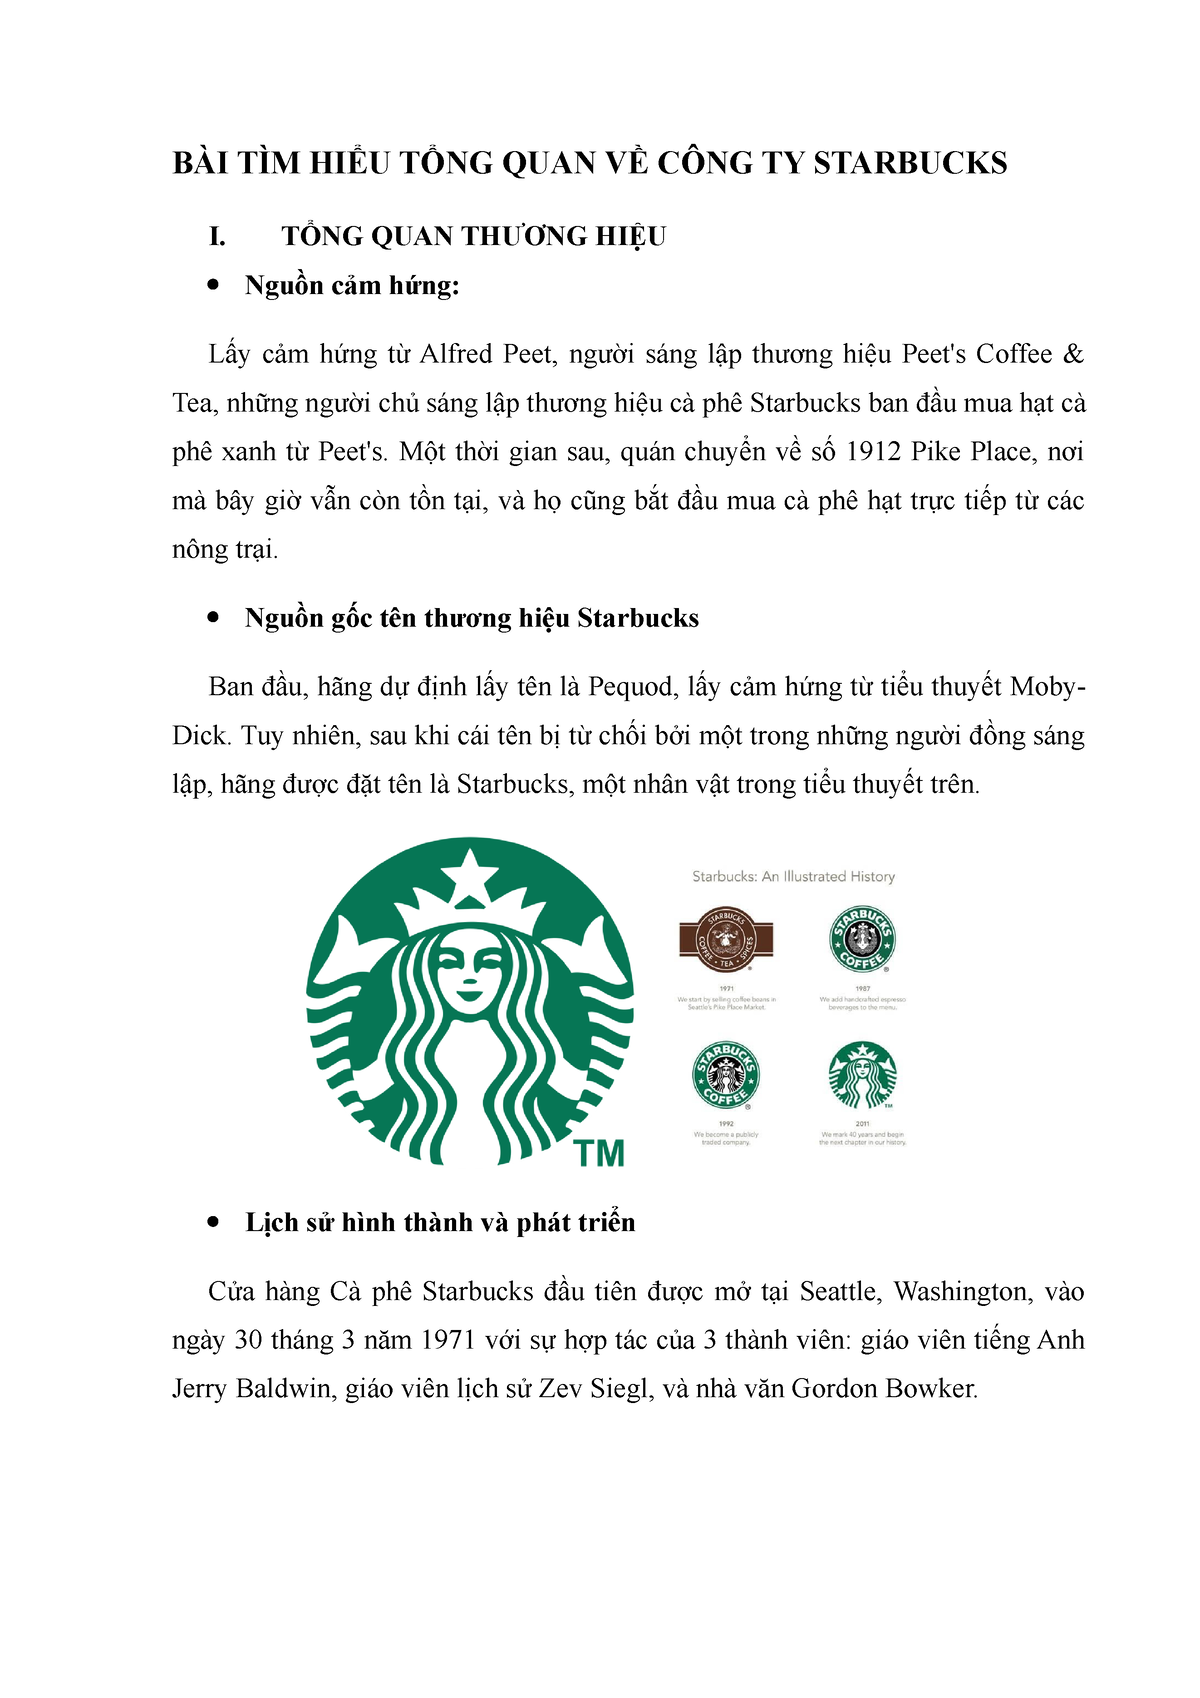 Starbucks đã vận dụng những yếu tố của marketing mix như thế nào